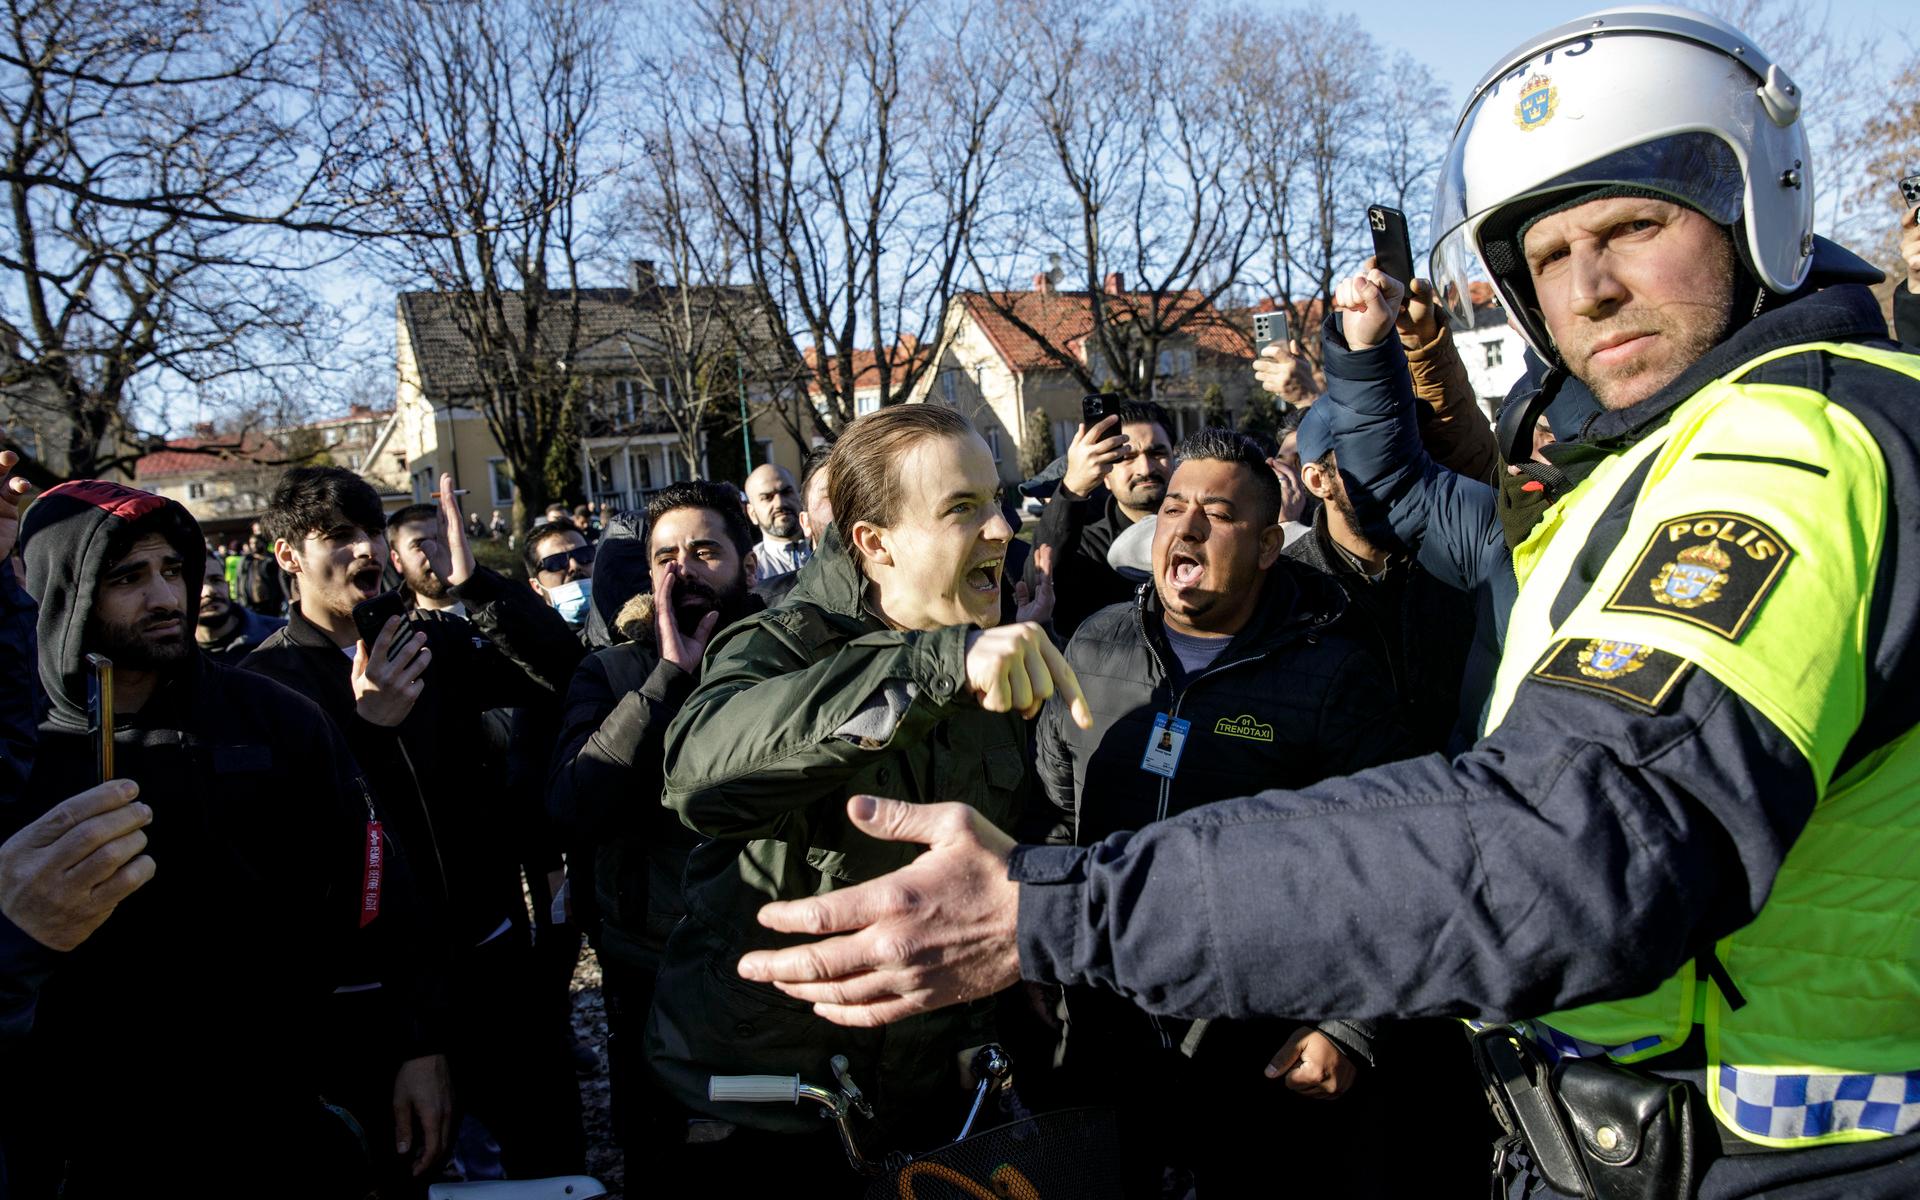 Motdemonstranter konfronterar polisen vid Sveaparken i Örebro, där Rasmus Paludan, partiledare för det danska högerextrema partiet Stram kurs, har fått tillstånd för en sammankomst på långfredagen. 